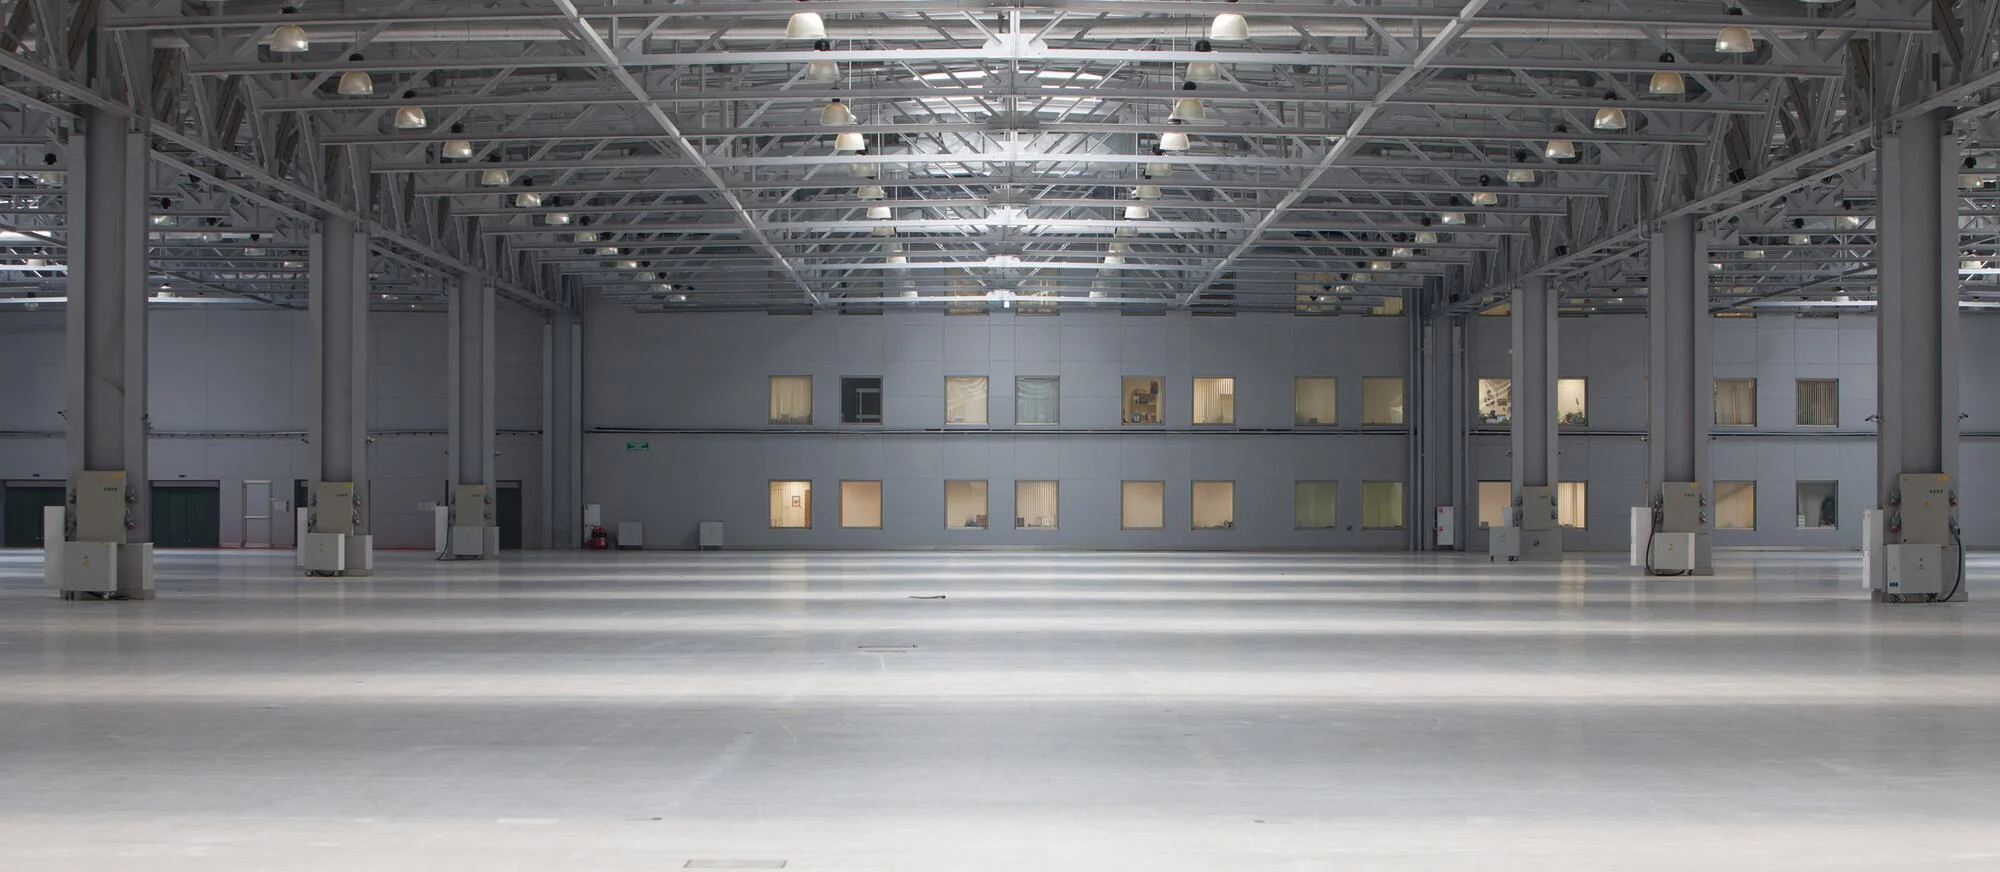 Das Bild zeigt eine große, leere Industriehalle mit einer hohen Decke, ausgestattet mit Beleuchtung und einigen Schaltkästen oder Maschinen verteilt am Boden, vor einem Hintergrund mit verglasten Büroflächen.